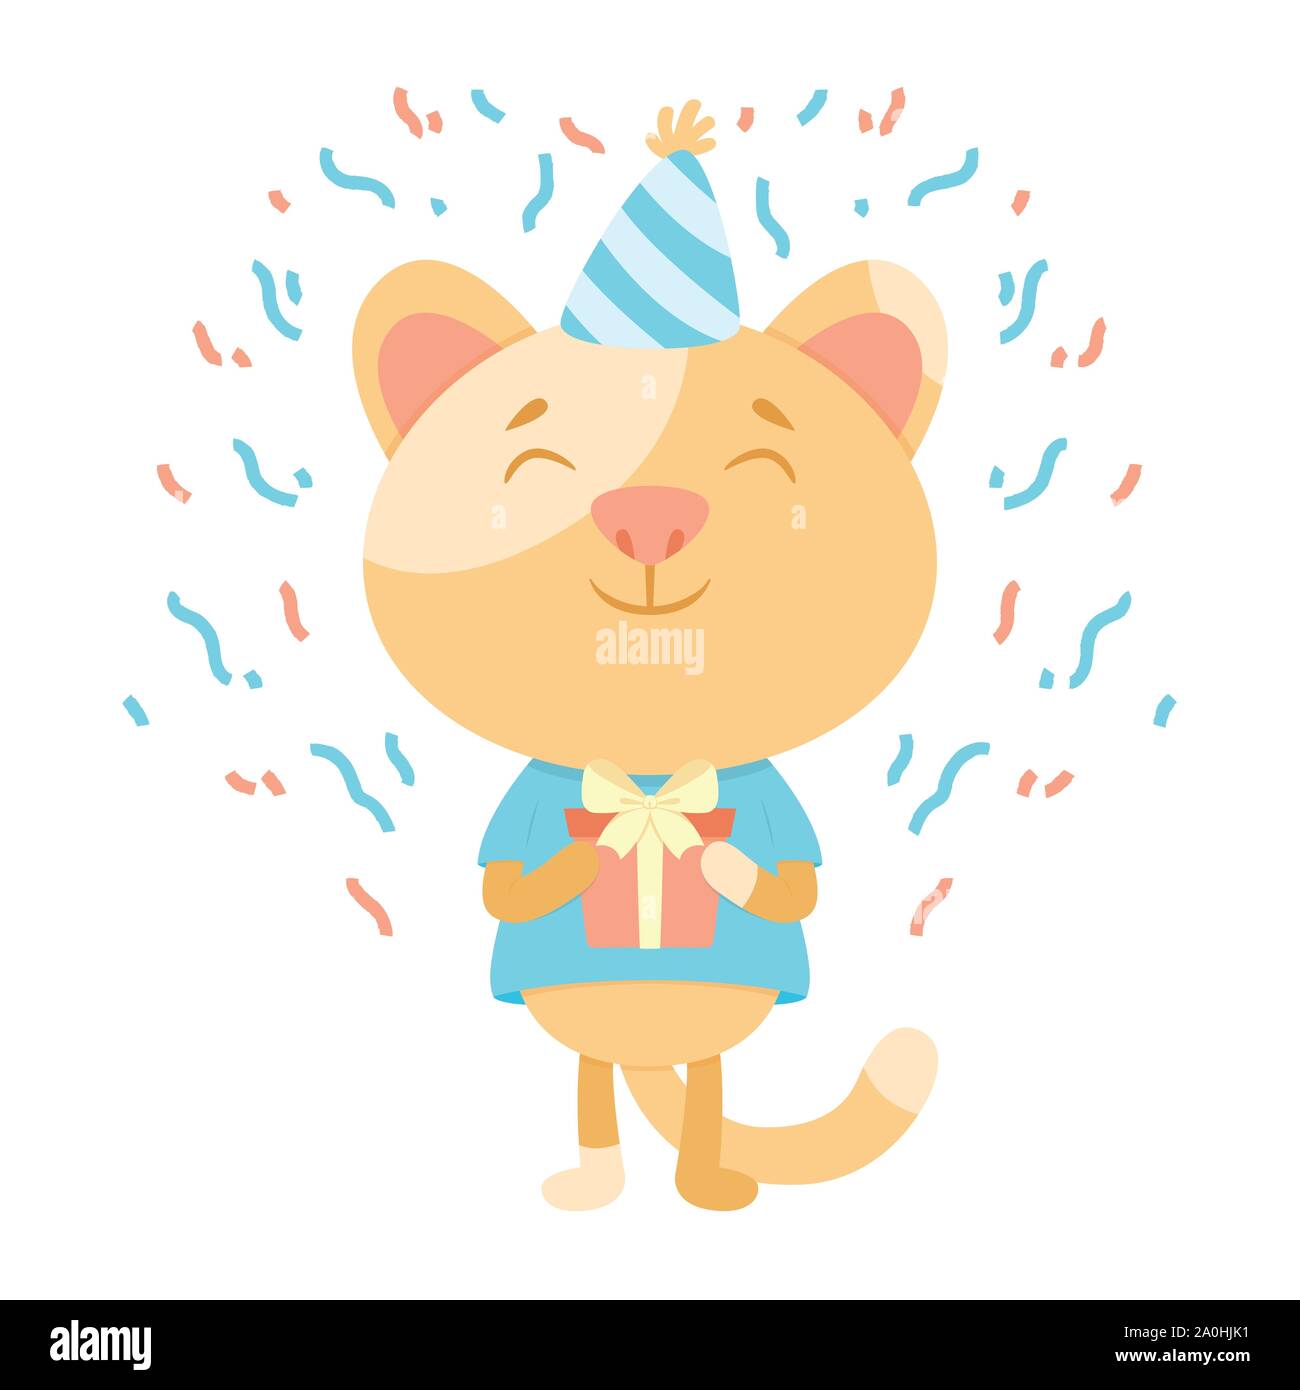 Geburtstag Grußkarte mit einer Katze. Cute Kitty Cat Vector Illustration. Herzlichen Glückwunsch zum Geburtstag. Eine Katze, die in einem festlichen Kappe mit präsentieren. Postkarte - Rückseite Stock Vektor